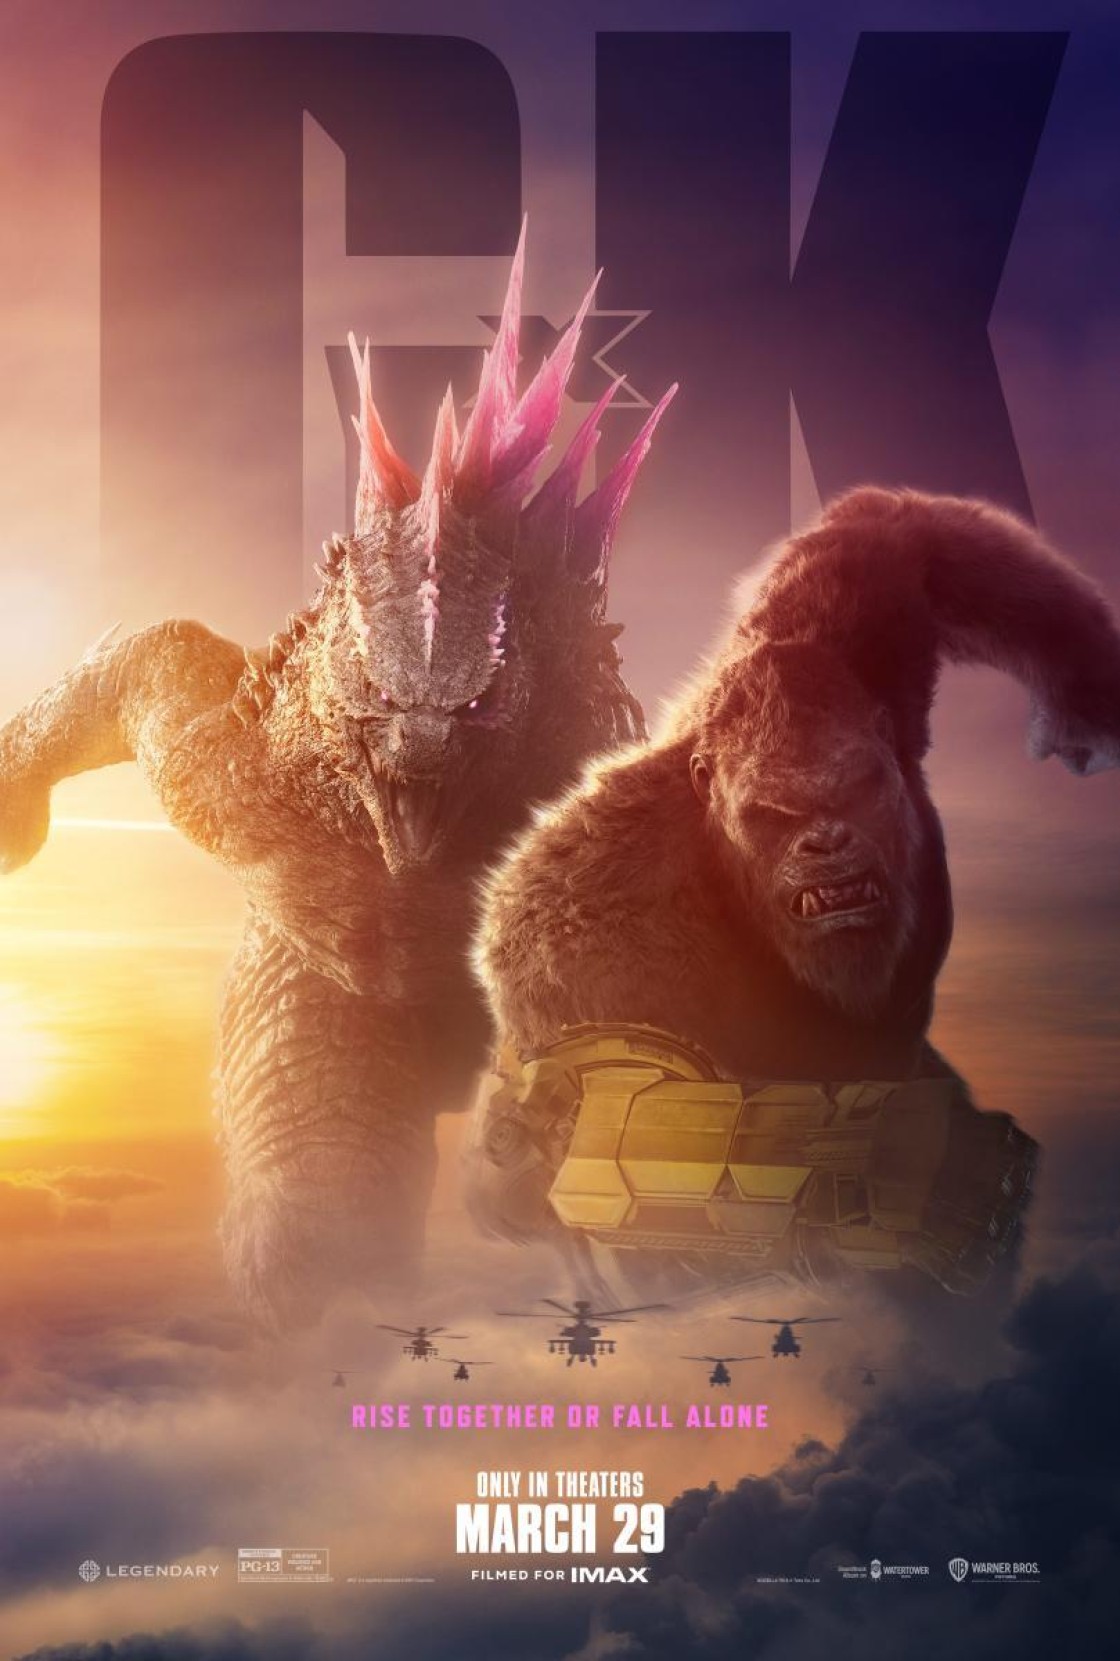 El Cine Maravillas de Teruel proyecta ‘Godzilla  y Kong: El nuevo imperio”